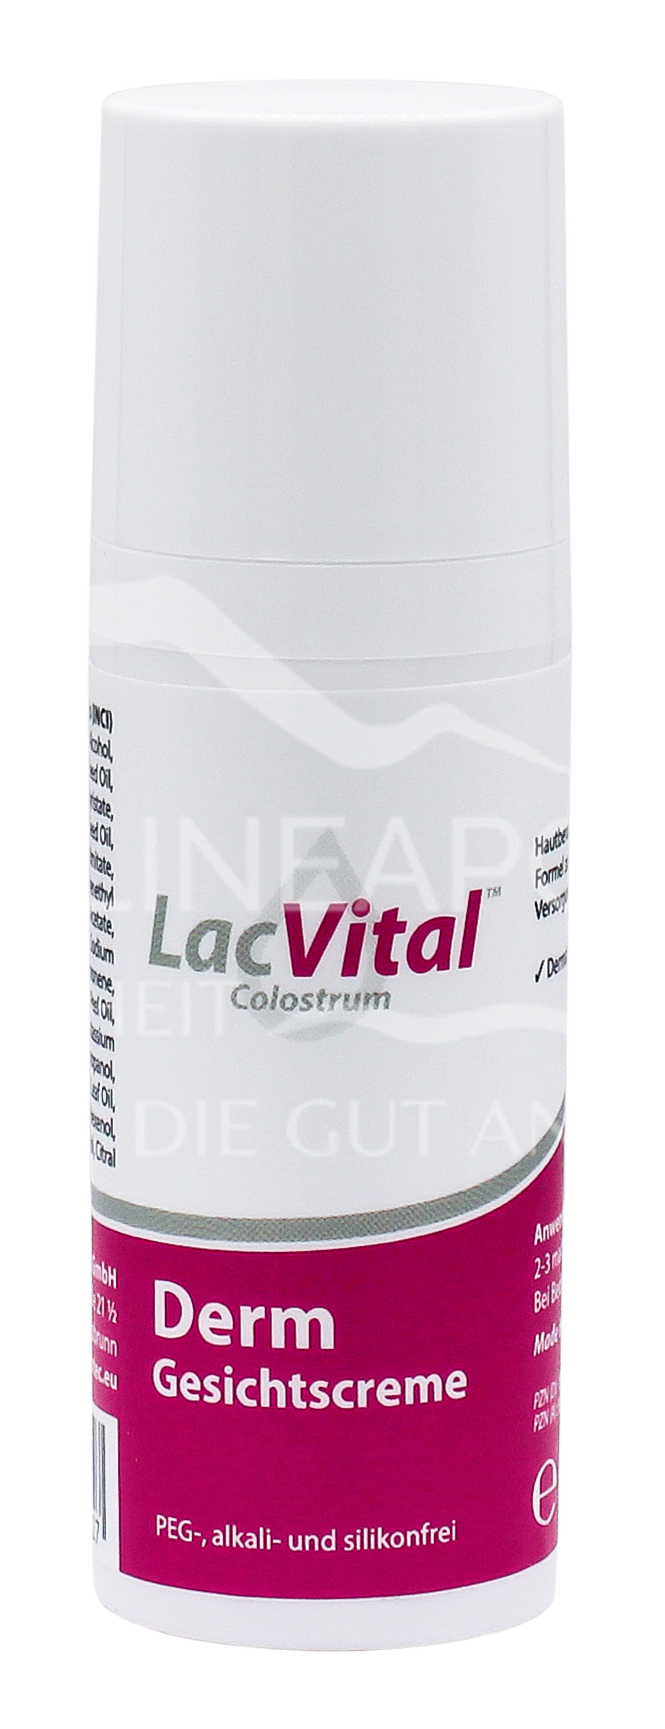 LacVital™ Colostrum Derm Gesichtscreme